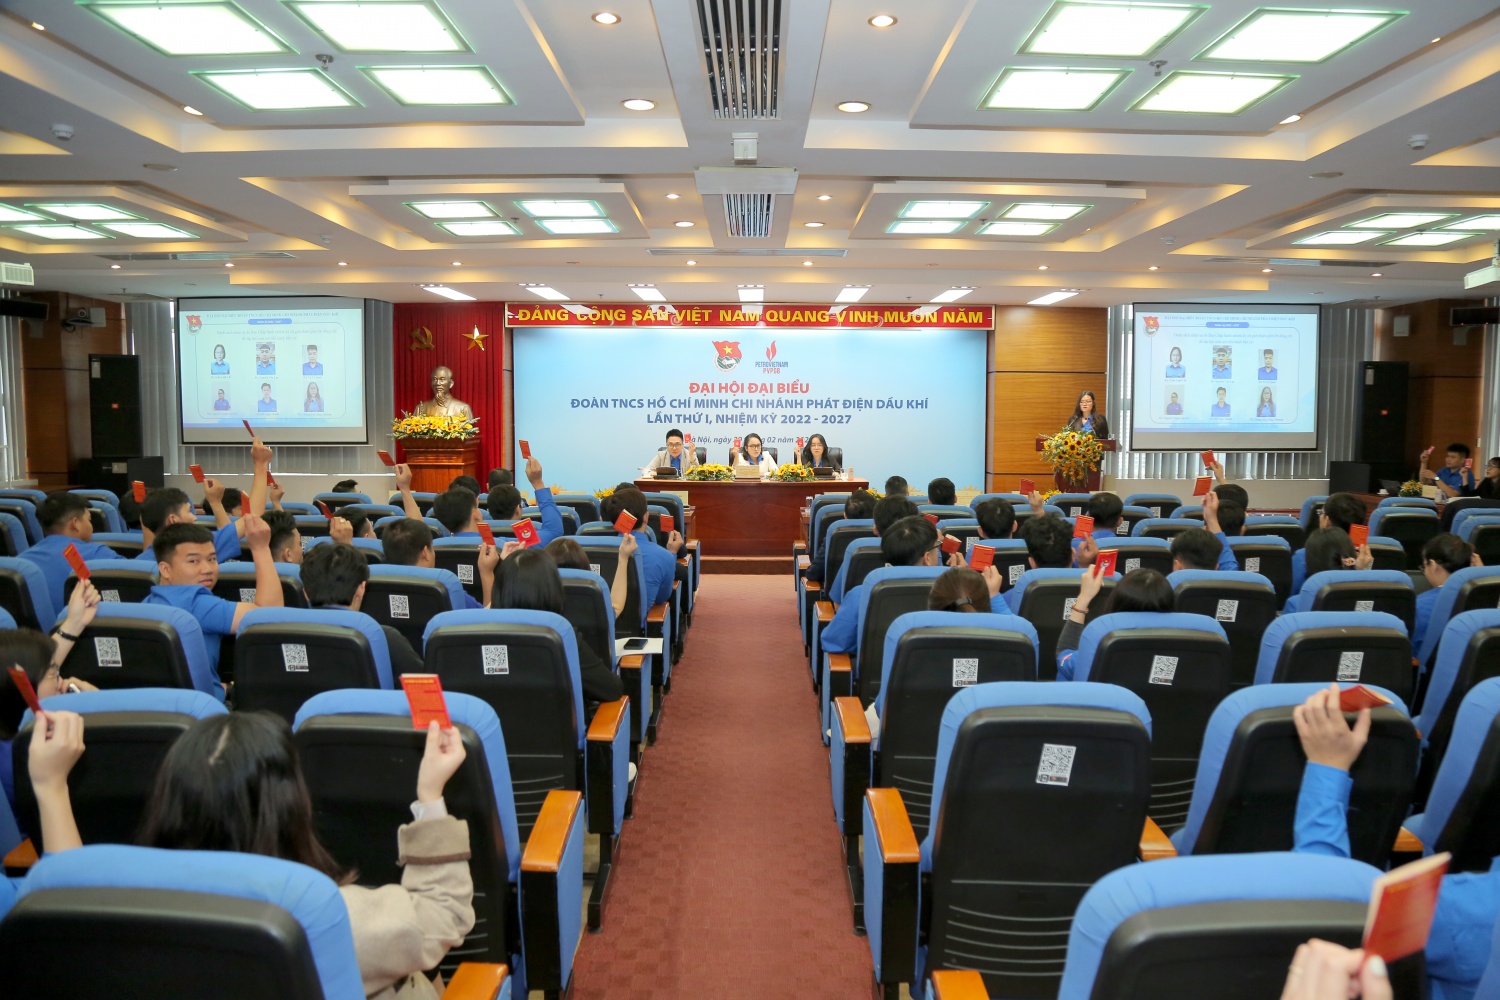 Đoàn Thanh niên PVPGB tổ chức thành công Đại hội đại biểu lần thứ I nhiệm kỳ 2022-2027